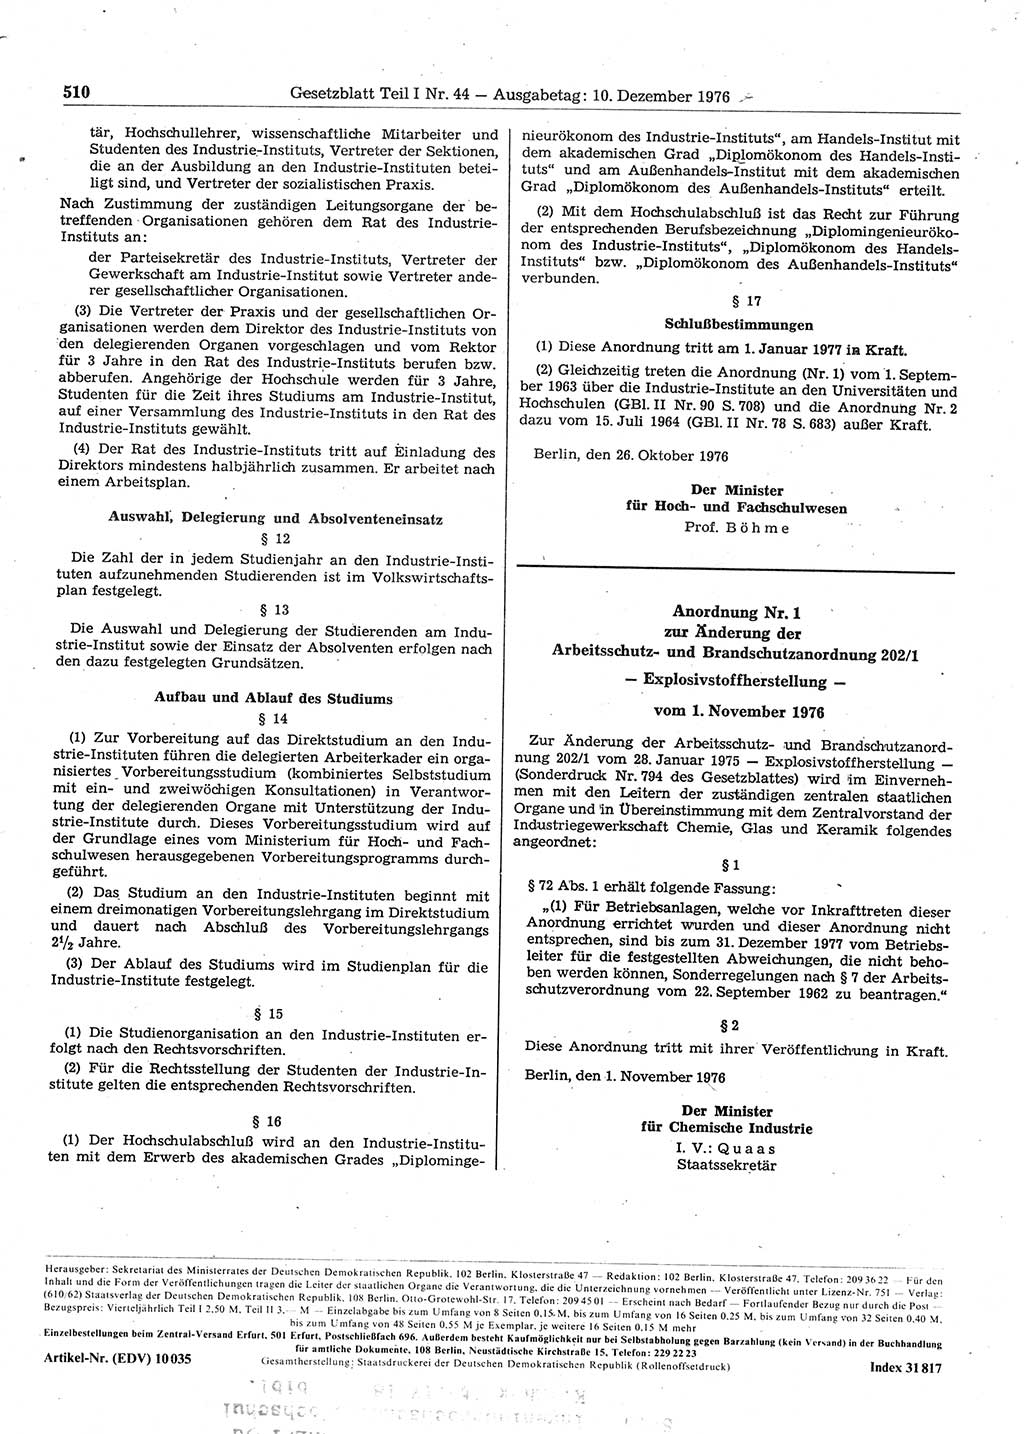 Gesetzblatt (GBl.) der Deutschen Demokratischen Republik (DDR) Teil Ⅰ 1976, Seite 510 (GBl. DDR Ⅰ 1976, S. 510)